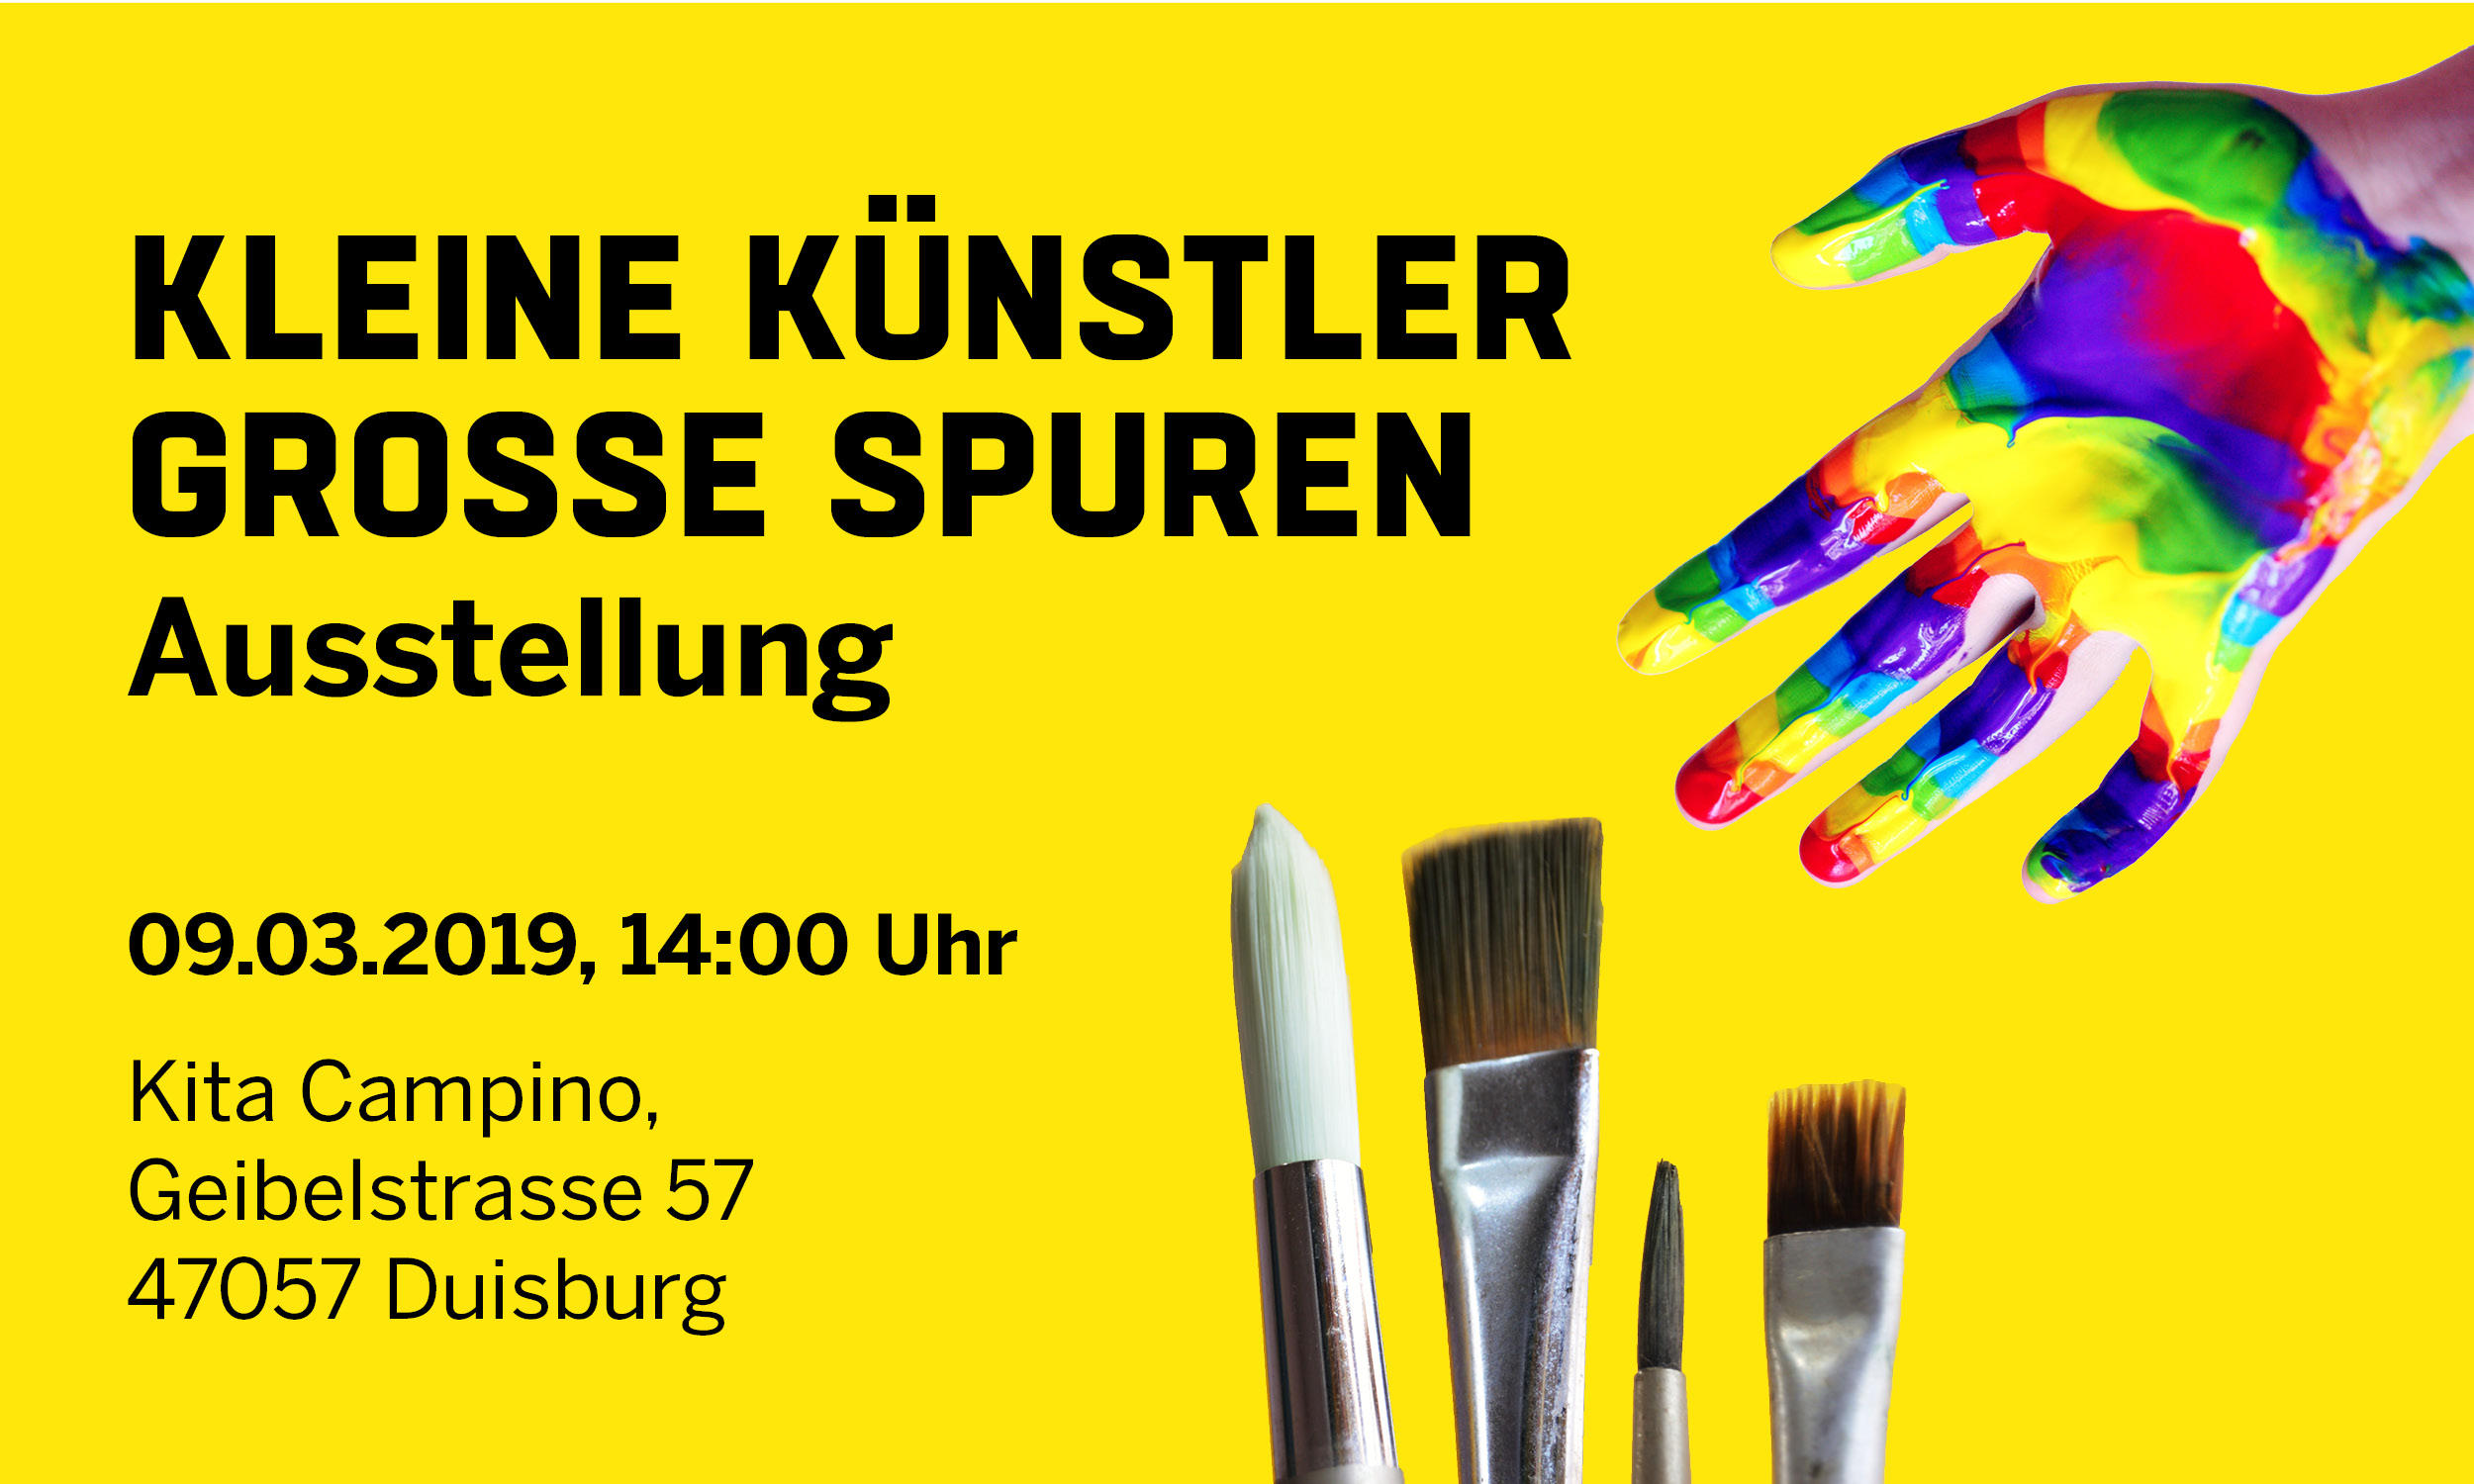 Die Kita Campino, Campus Duisburg lädt am 09.03.2019 um 14:00 Uhr zur Ausstellung "Kleine Künstler/innen - Große Spuren" ein.